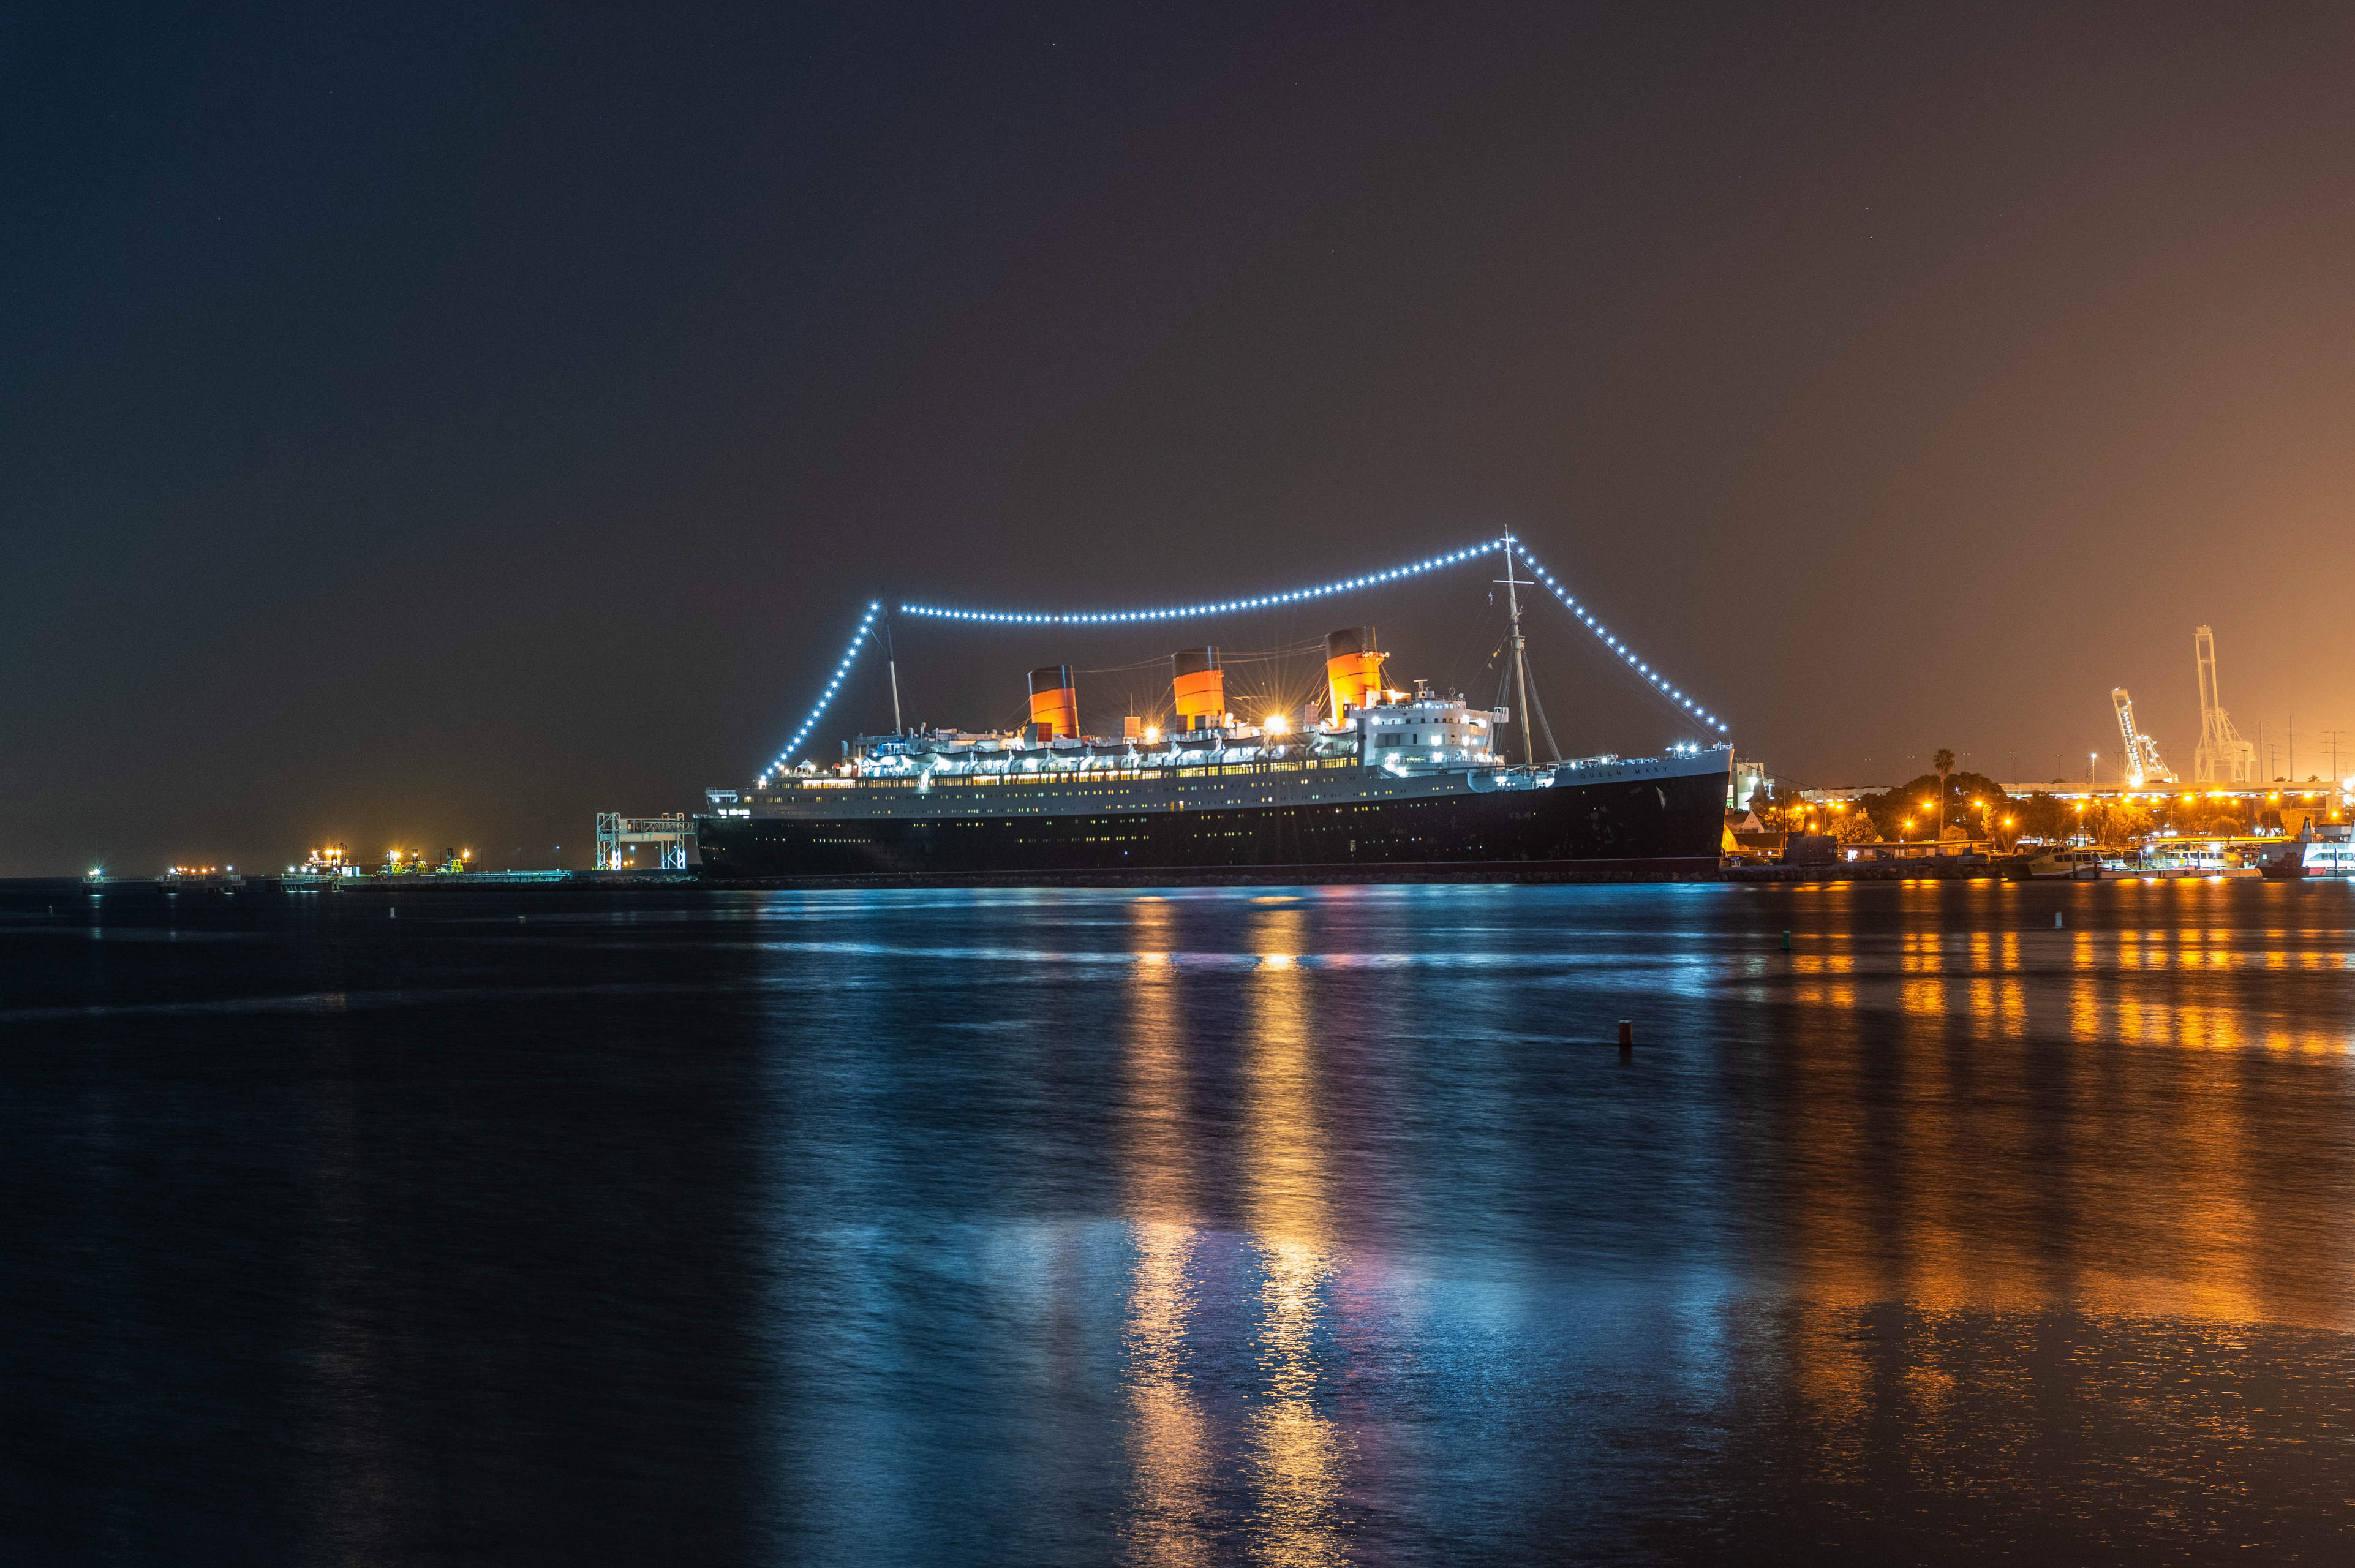 壁紙 3845x2560 アメリカ合衆国 船 クルーズ船 Queen Mary カリフォルニア州 湾 夜 クリスマスライト 自然 ダウンロード 写真